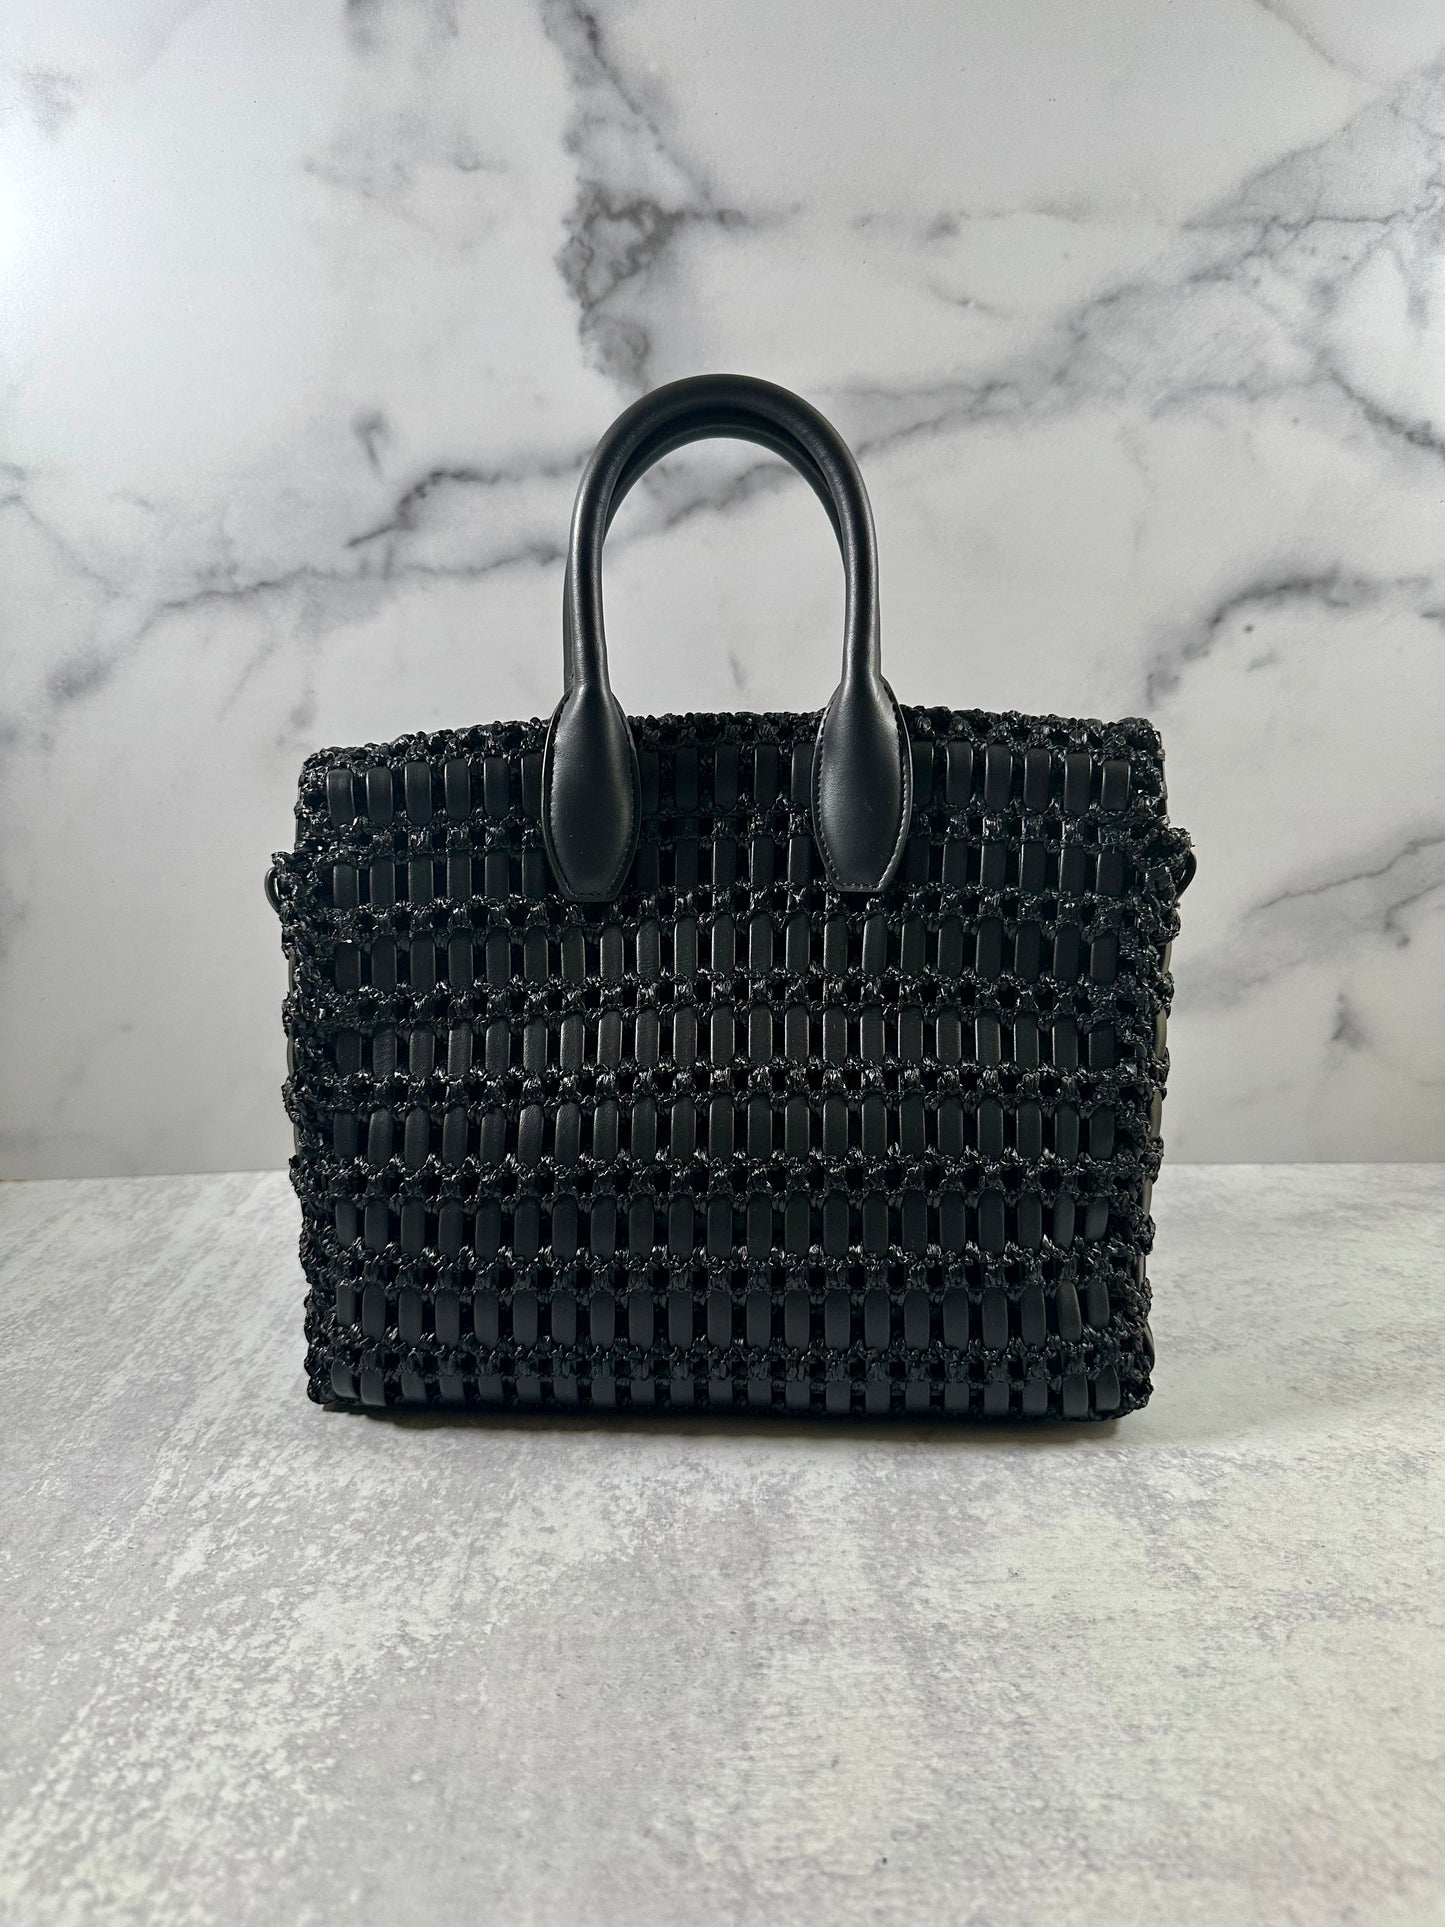 Ferragamo Studio Woven Leather Bag